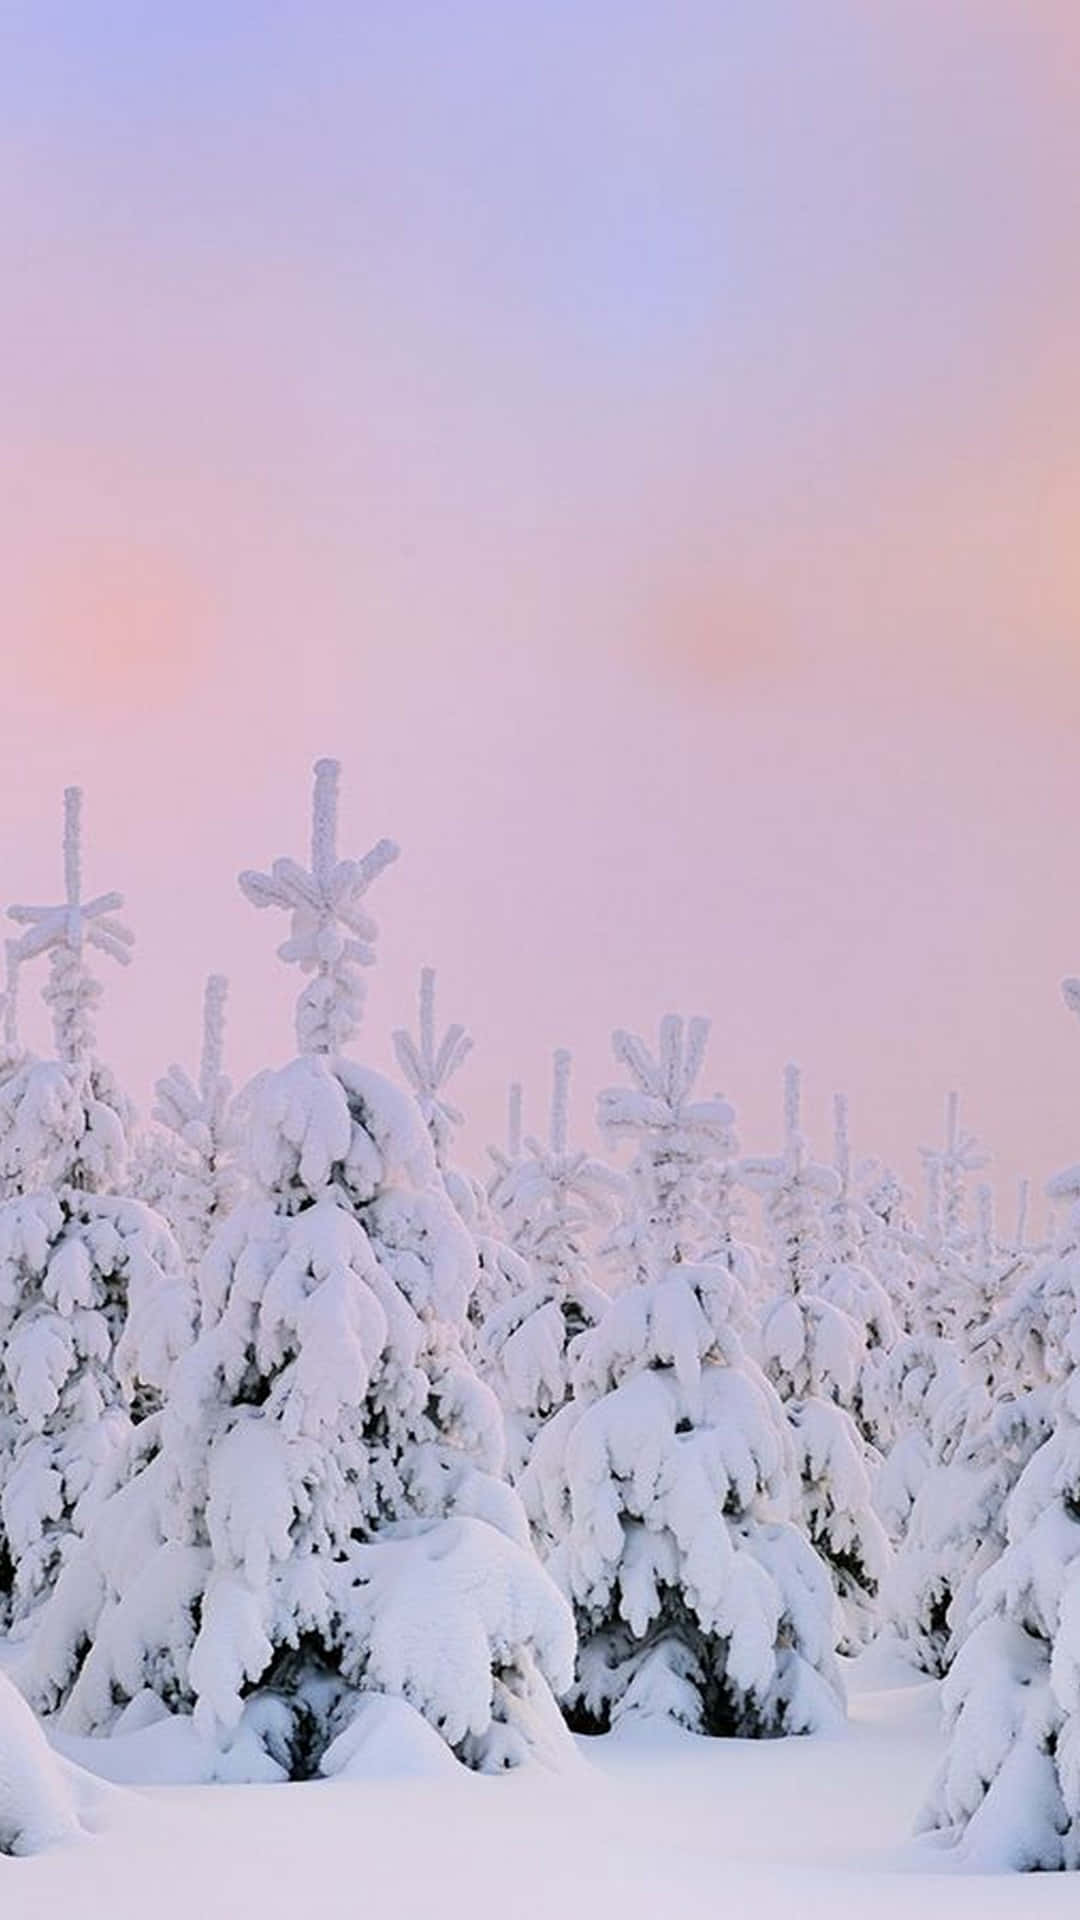  Schnee Hintergrundbild 1080x1920. Bilder Von Snow Aesthetic